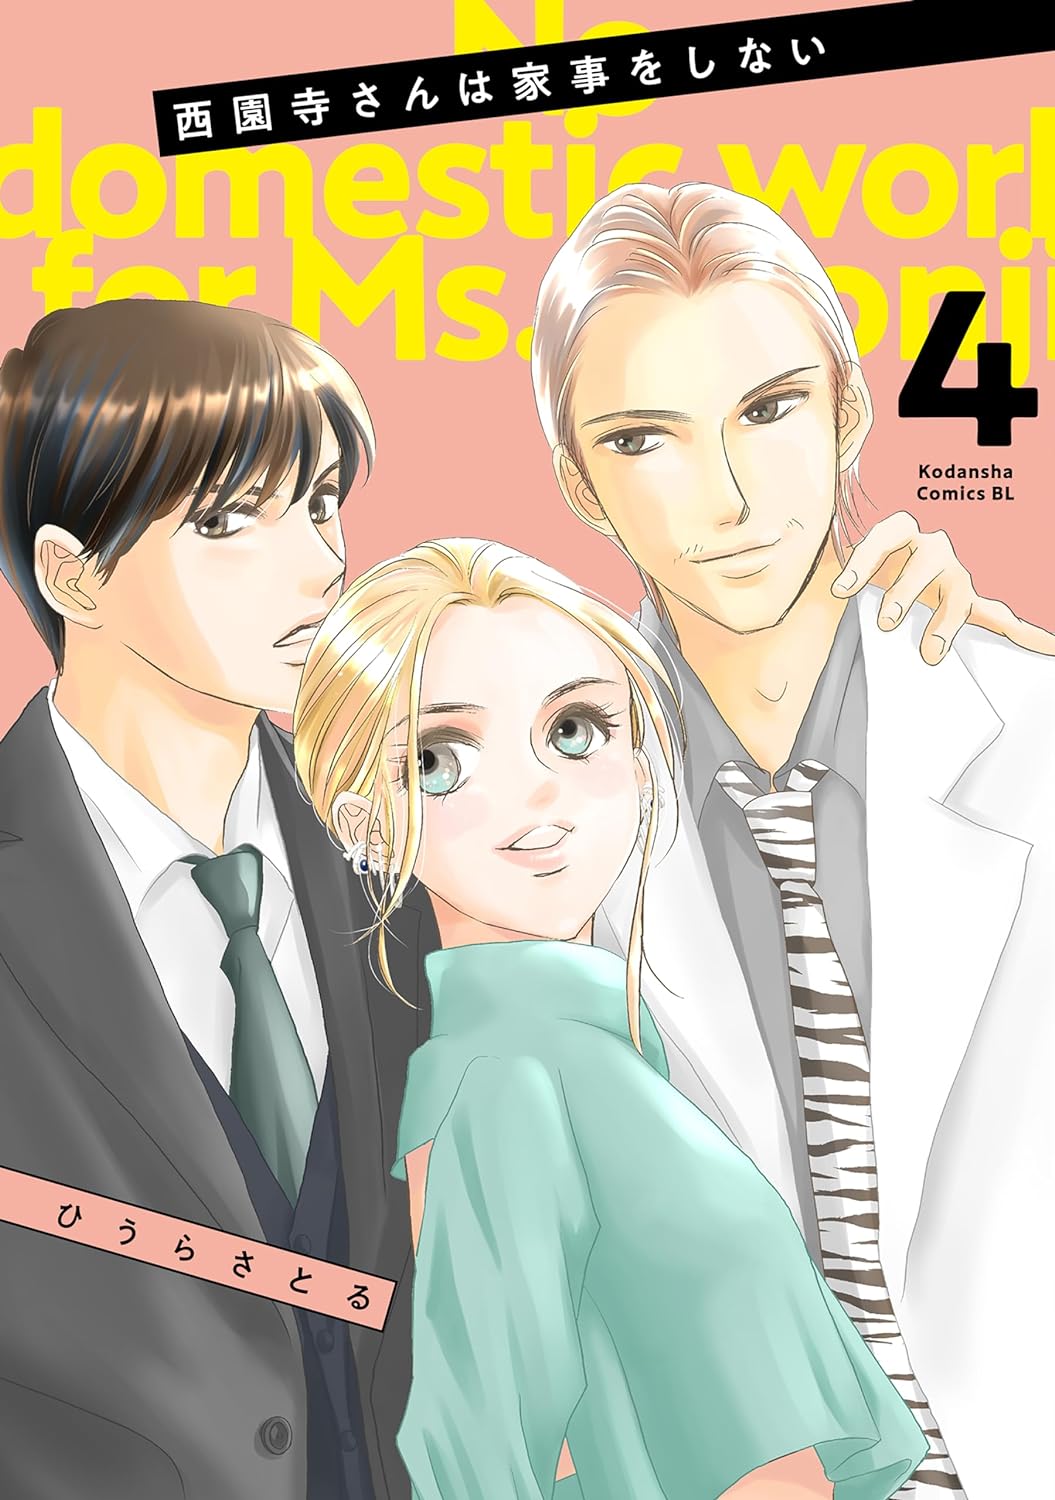 Saionji-san wa Kaji o Shinai Manga Cover Volume 4